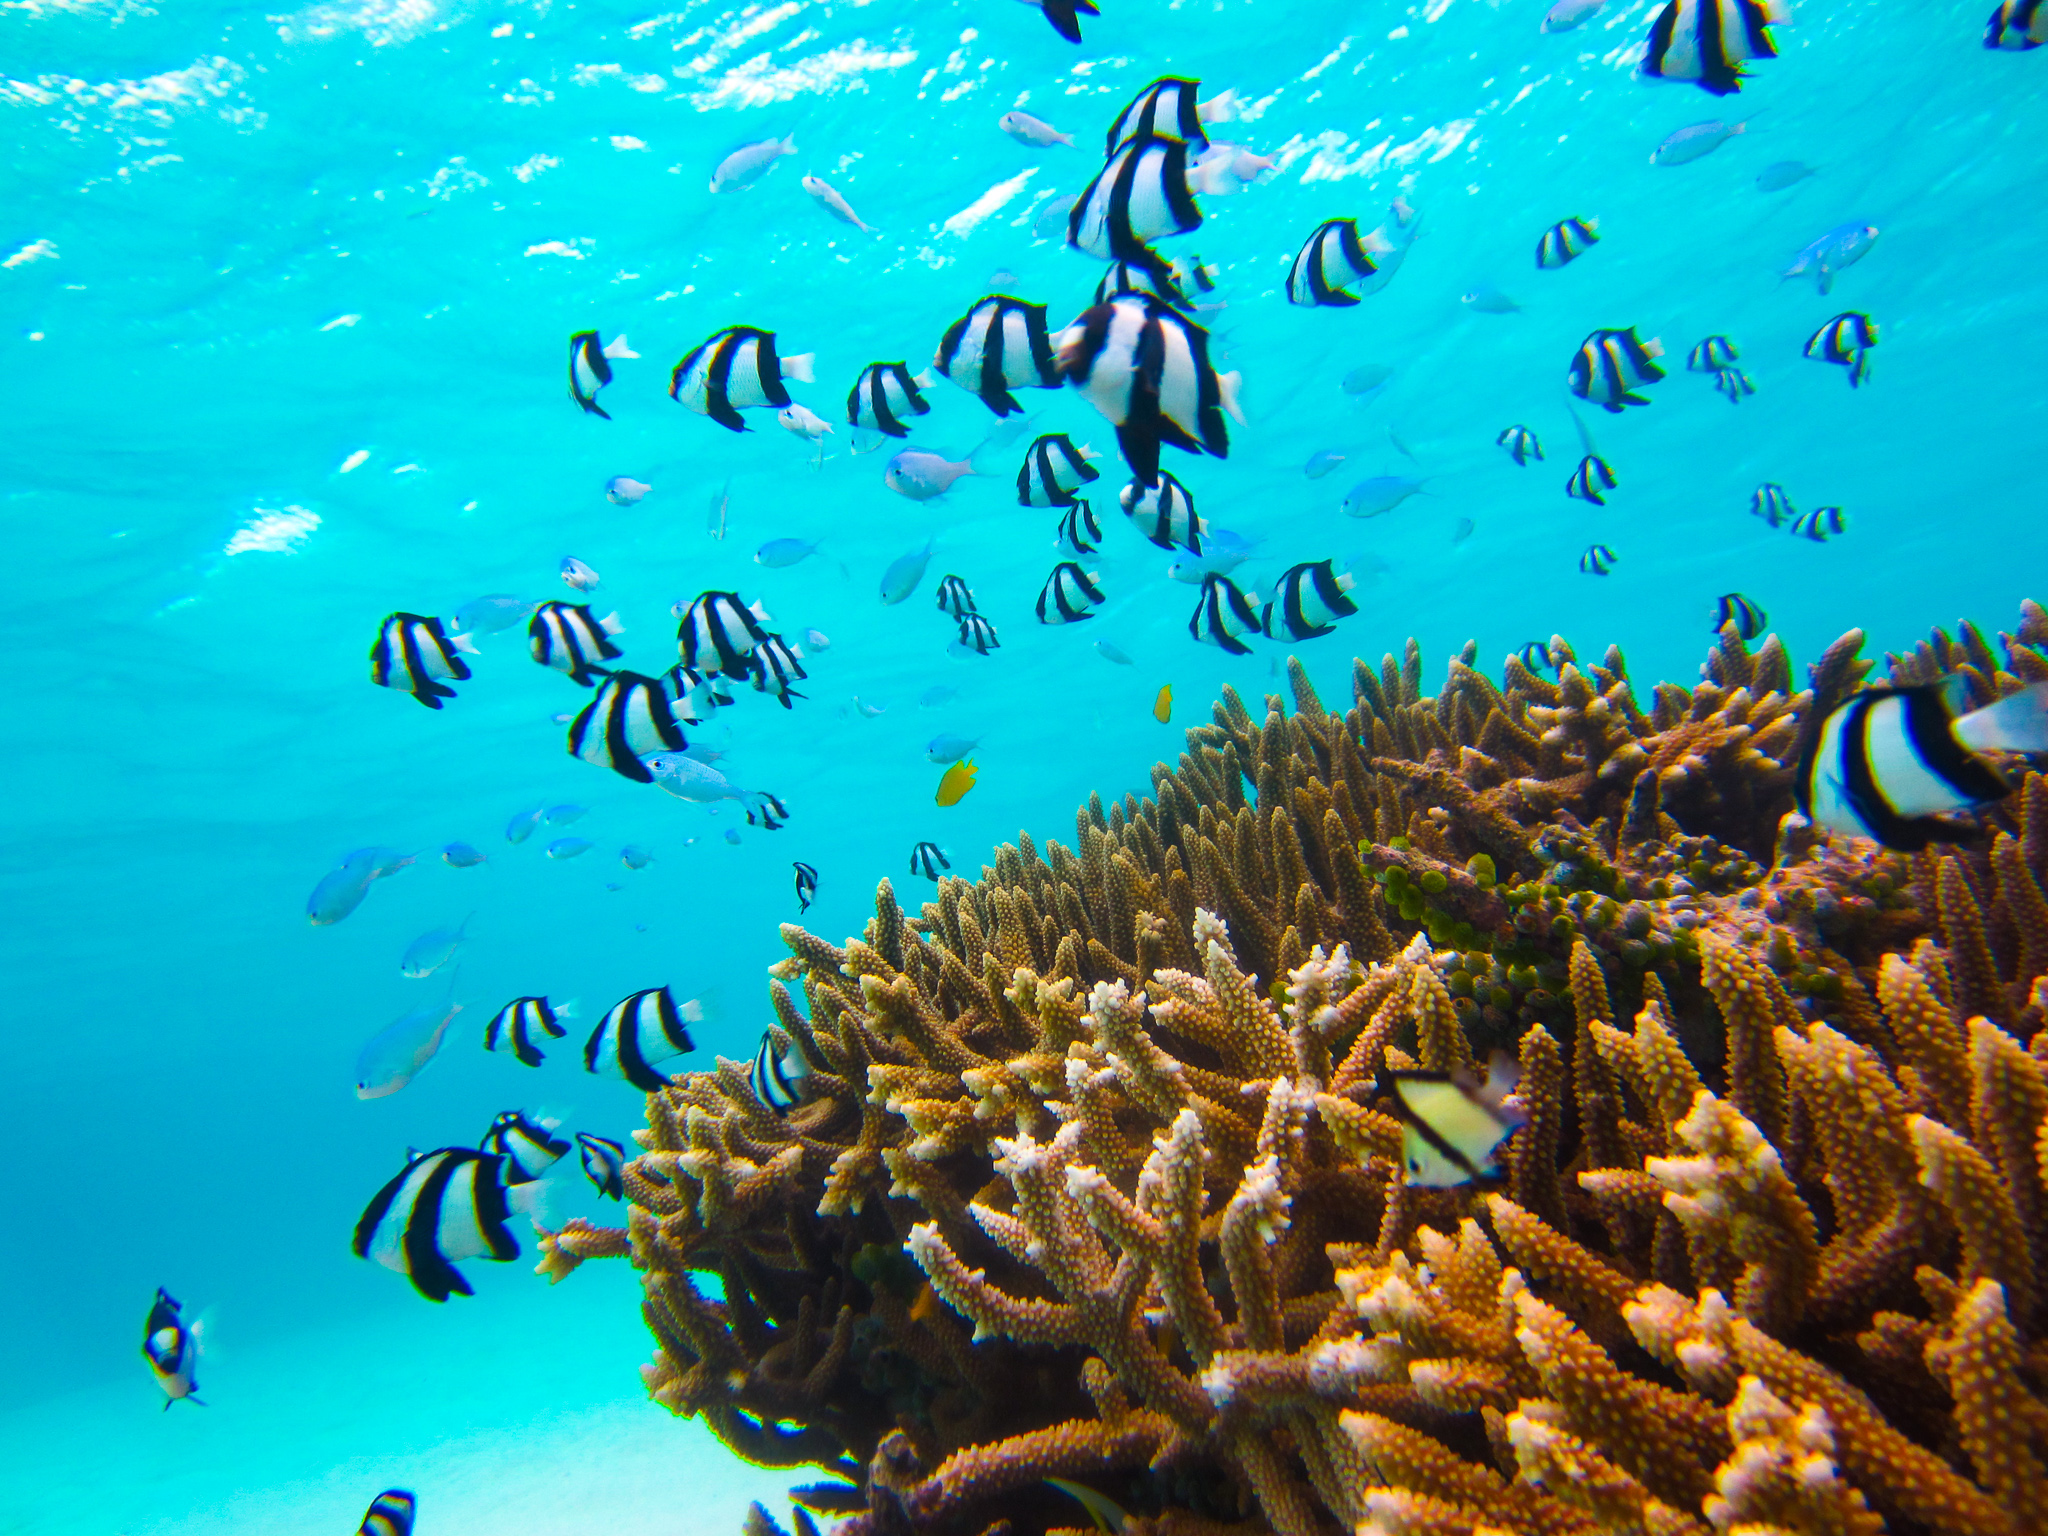 石垣島の美しいサンゴ礁を見に行きませんか 石垣島ツアーズ